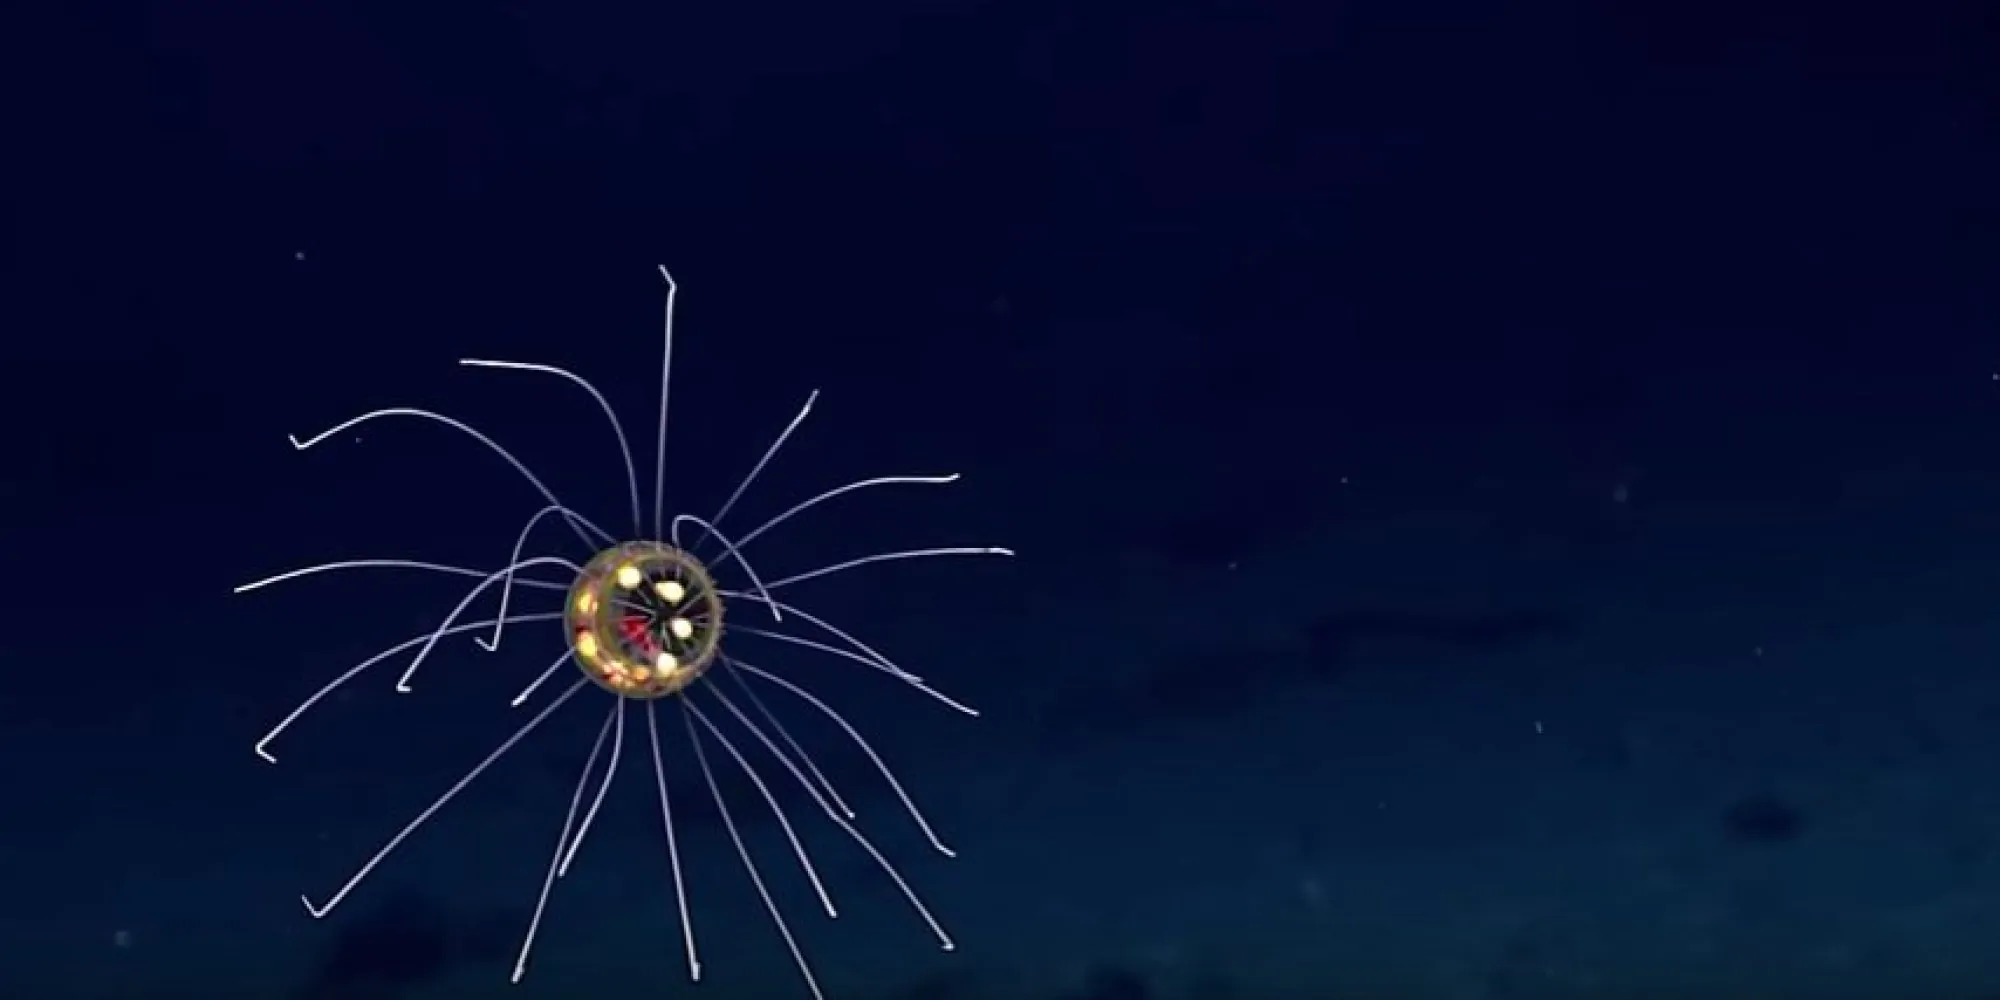 La fossa delle Marianne e la medusa aliena